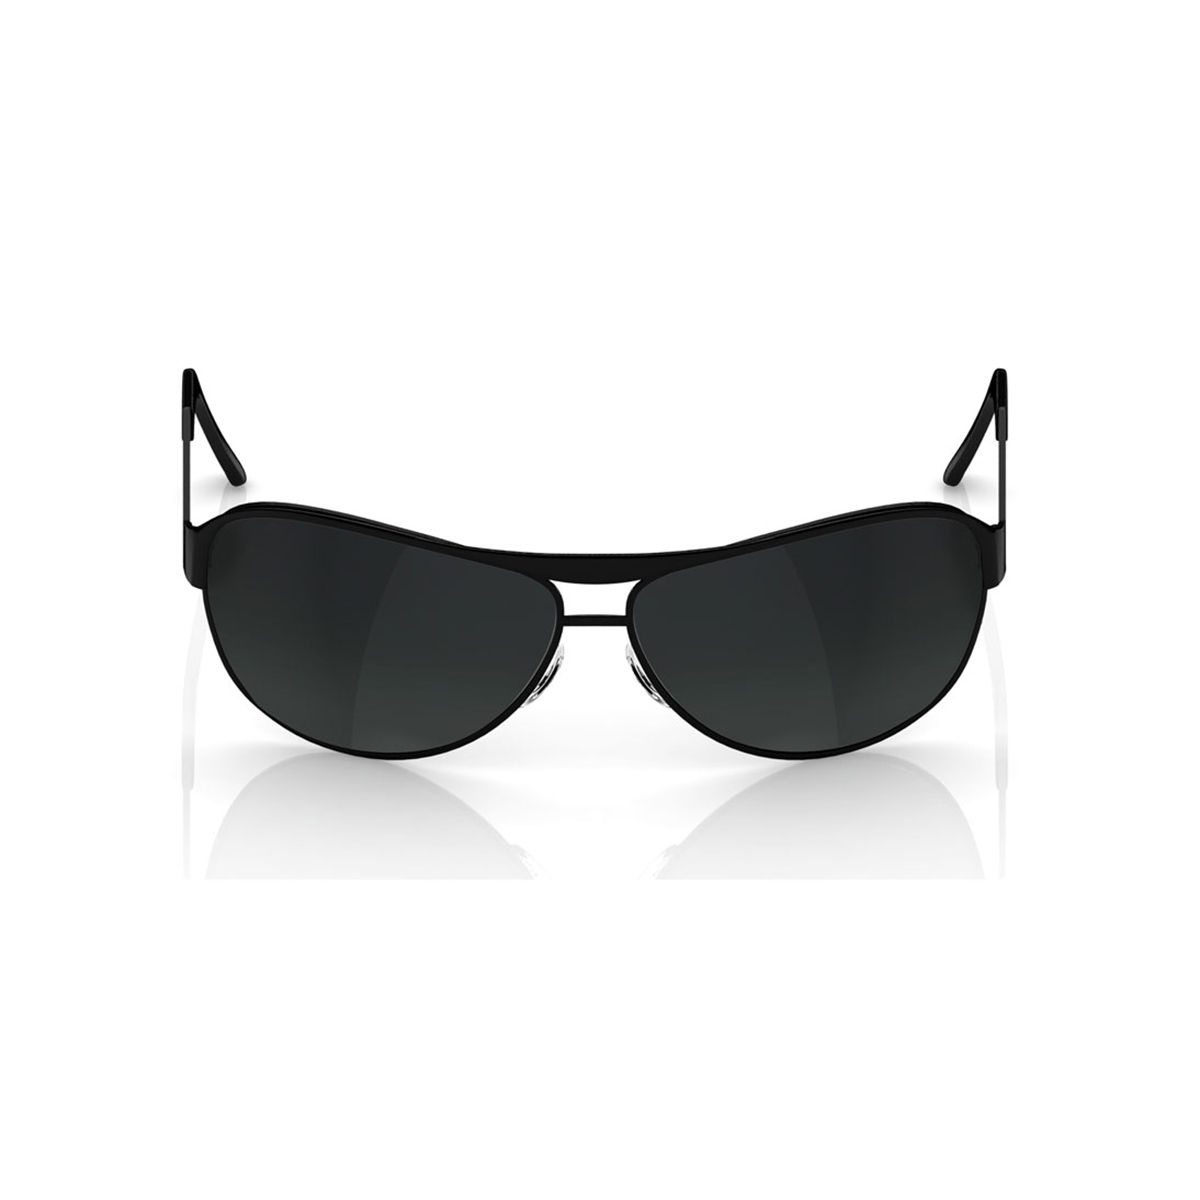 Buy Fastrack Black Aviator Sunglasses (M171BK1V) Online